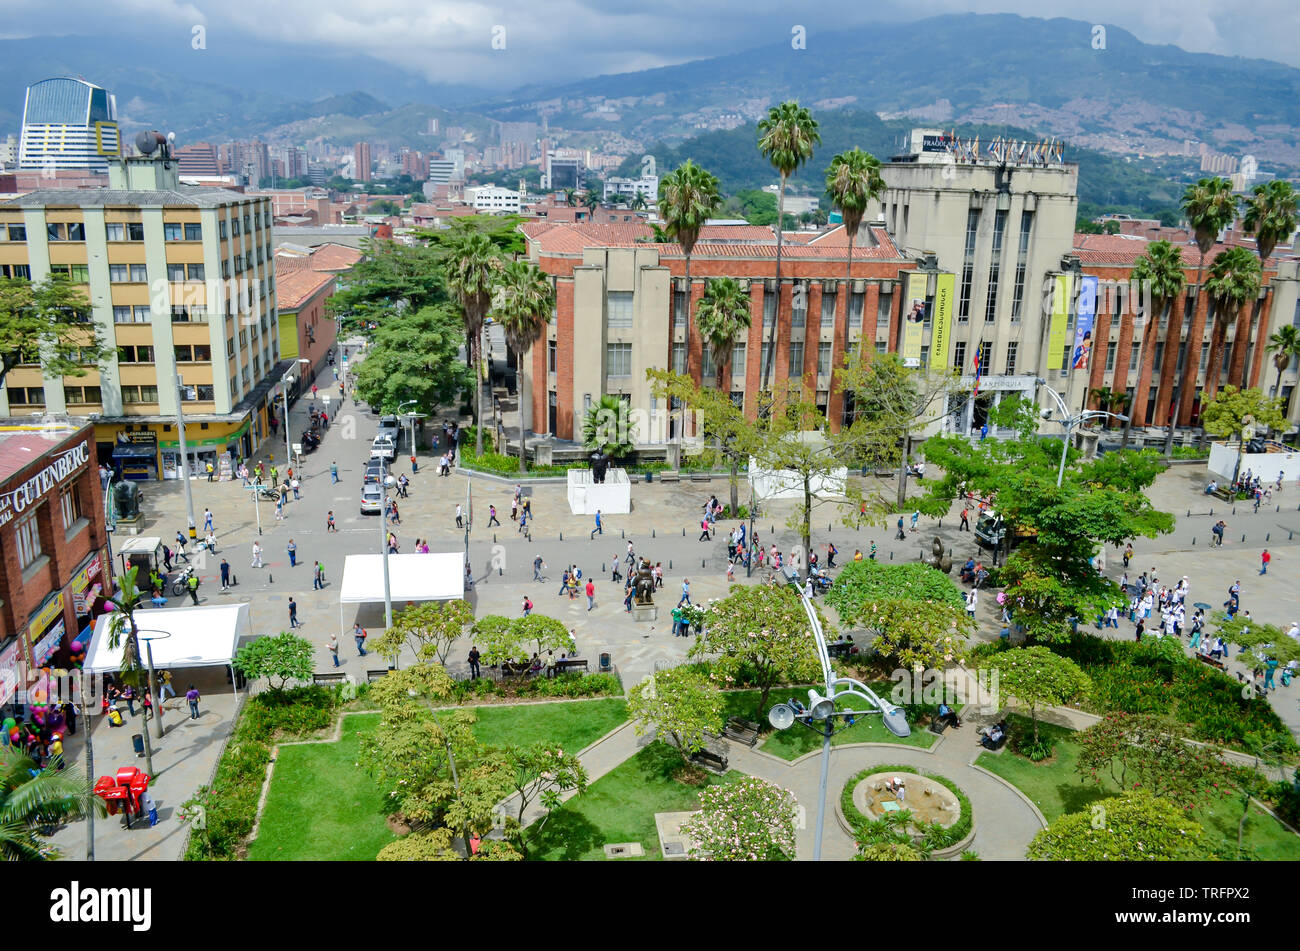 Vista di Plaza Botero a Medellin, un'attrazione da visitare a Medellin. Il Museo de Antioquia è visto nel centro dell'immagine. Foto Stock